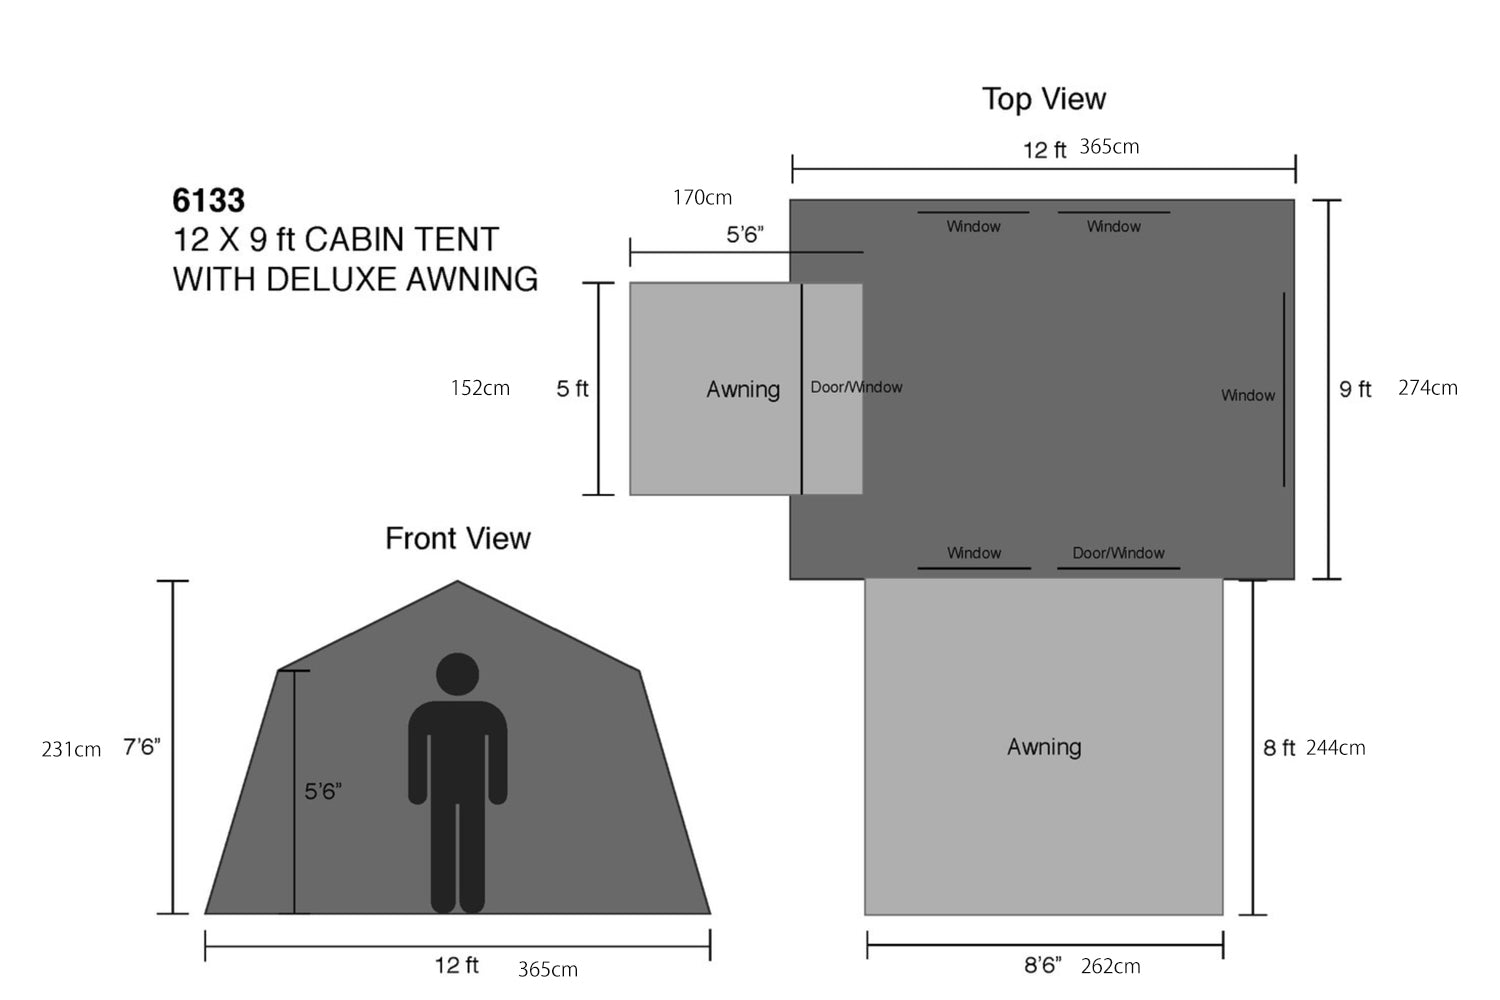 コディアックキャンバス キャビンテント 6人用 オーニング付き コットンテント 12 x 9 ft Cabin Tent with Deluxe Awning